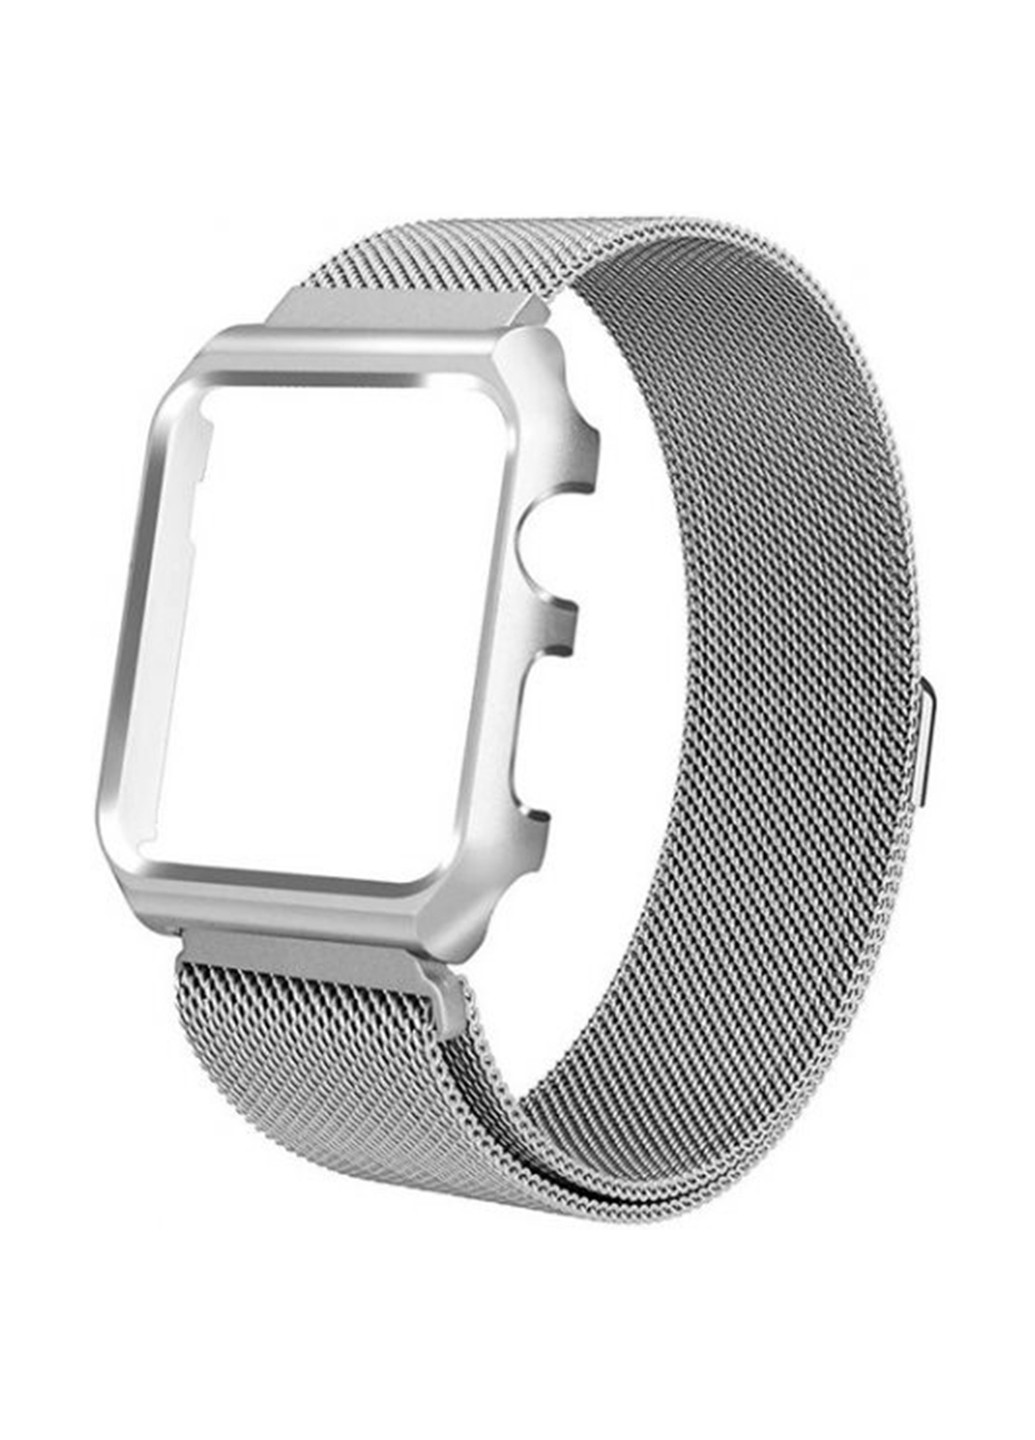 Ремешок для часов c накладкой Apple Watch 42/44mm Melanise Silver XoKo ремешок для часов c накладкой apple xoko watch 42/44mm melanise silver (143704638)